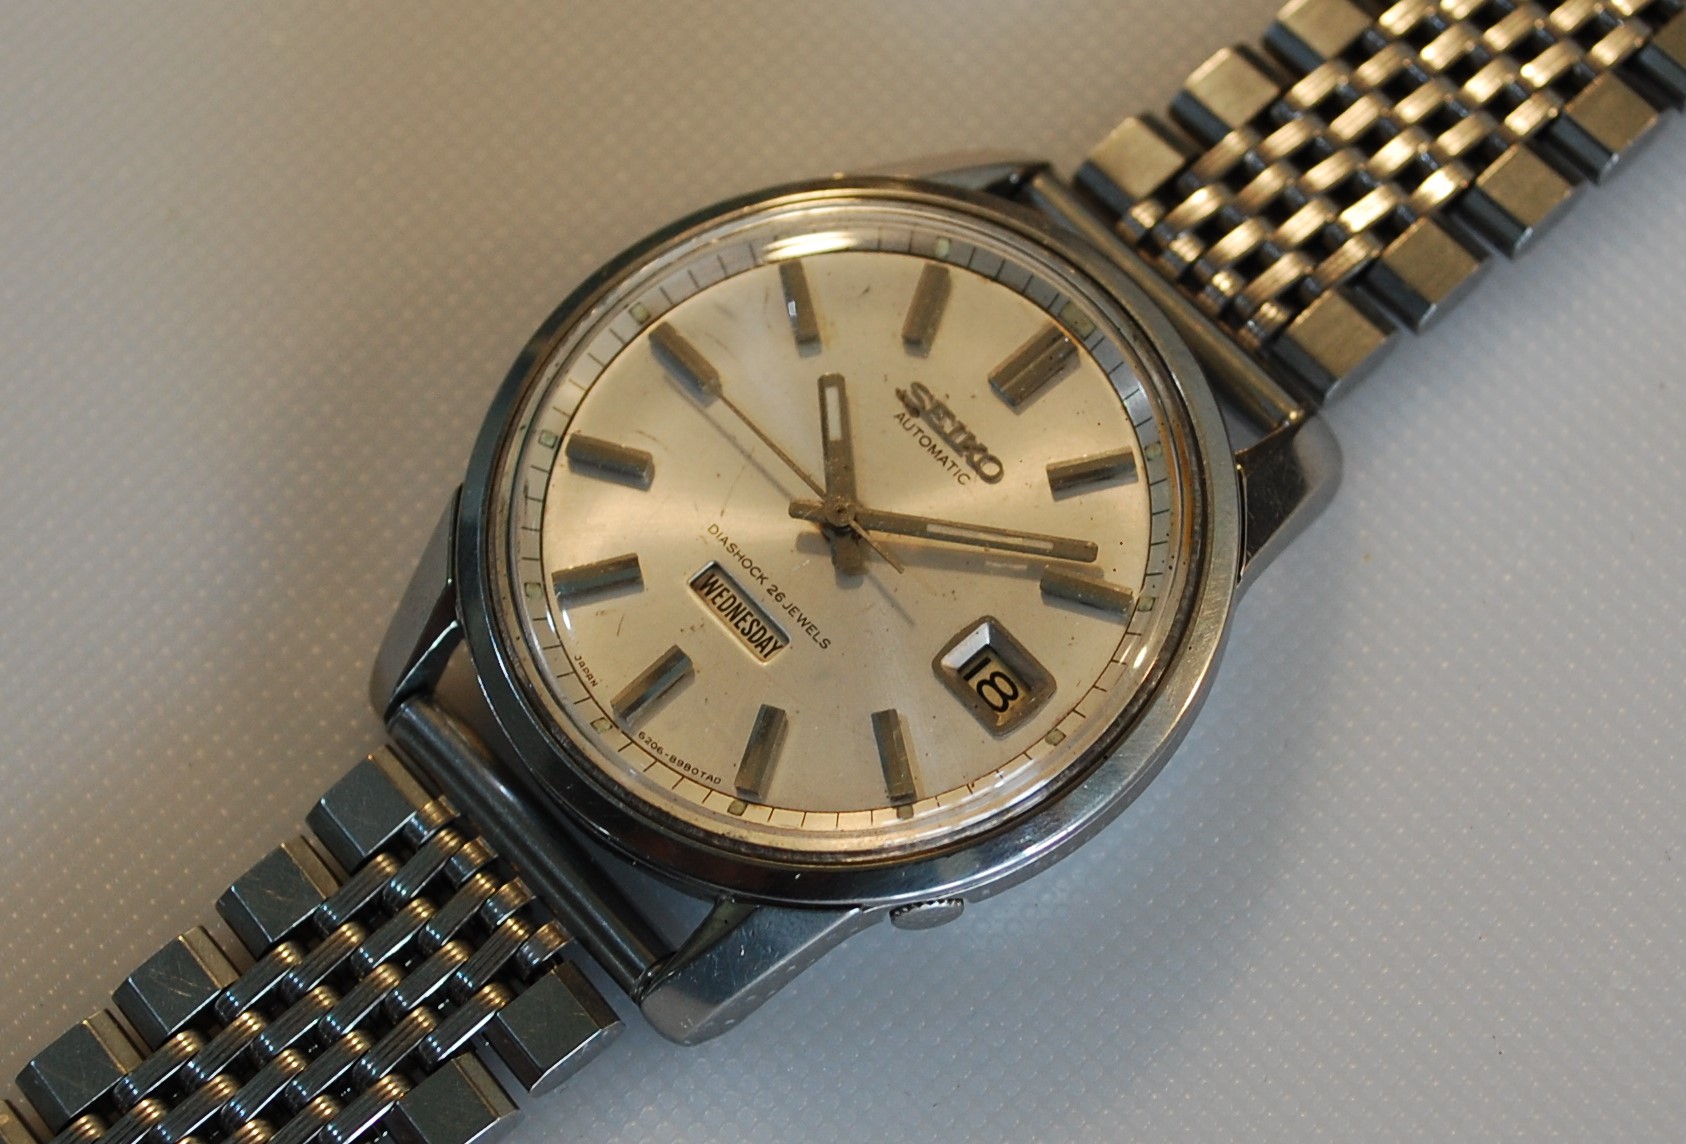 SOLD 1964 Seiko day date men's watch - Birth Year Watches